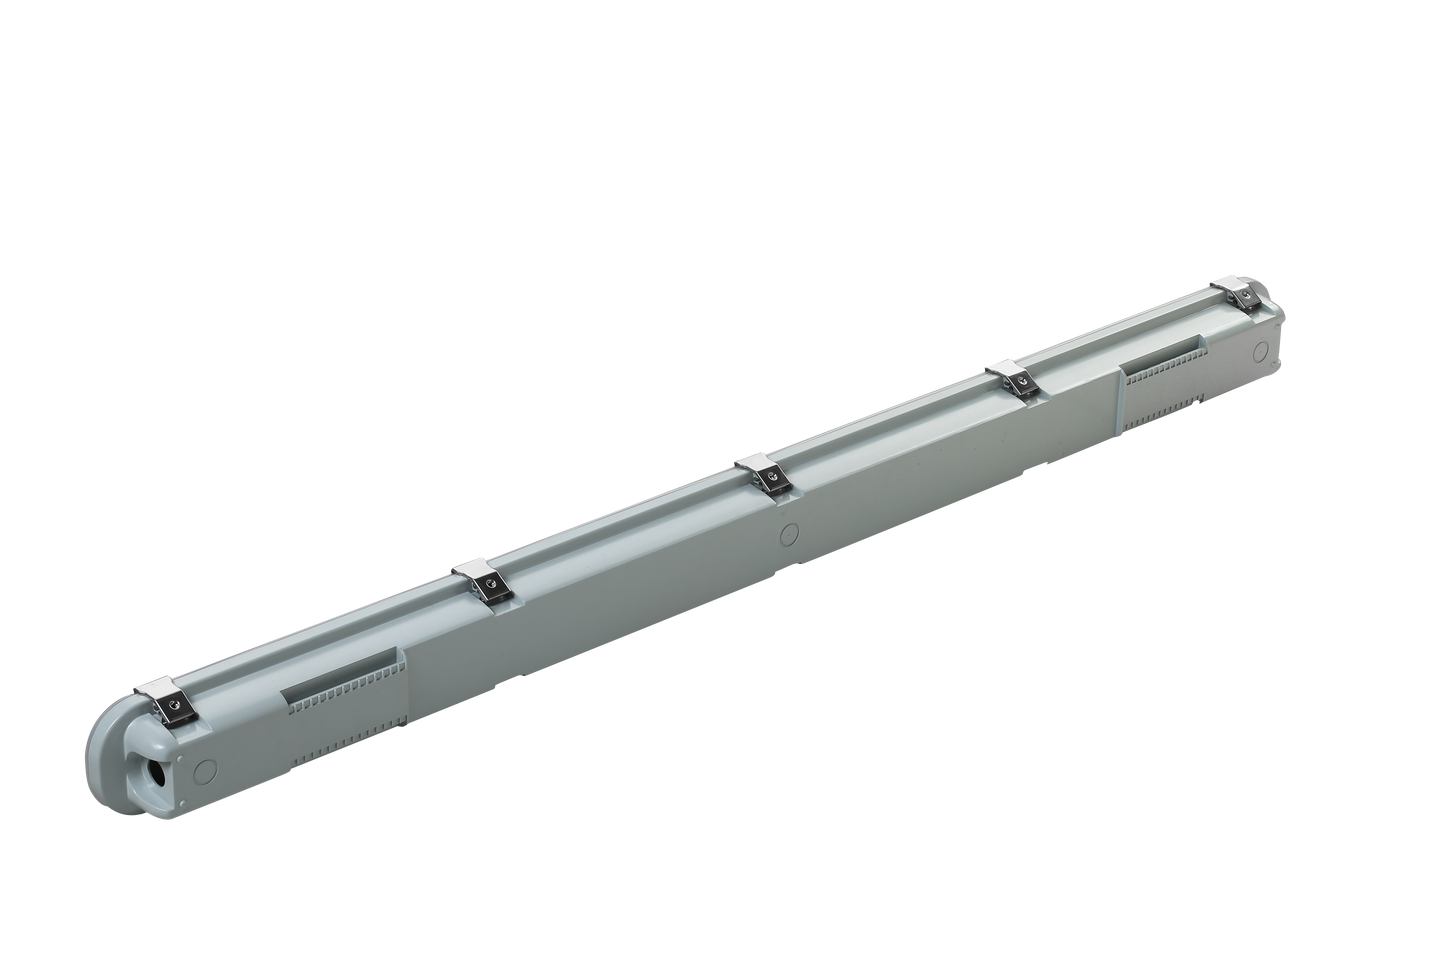 8ft LED Vapor Tight Linear (4-PACK) 75w (4000K or 5000K)